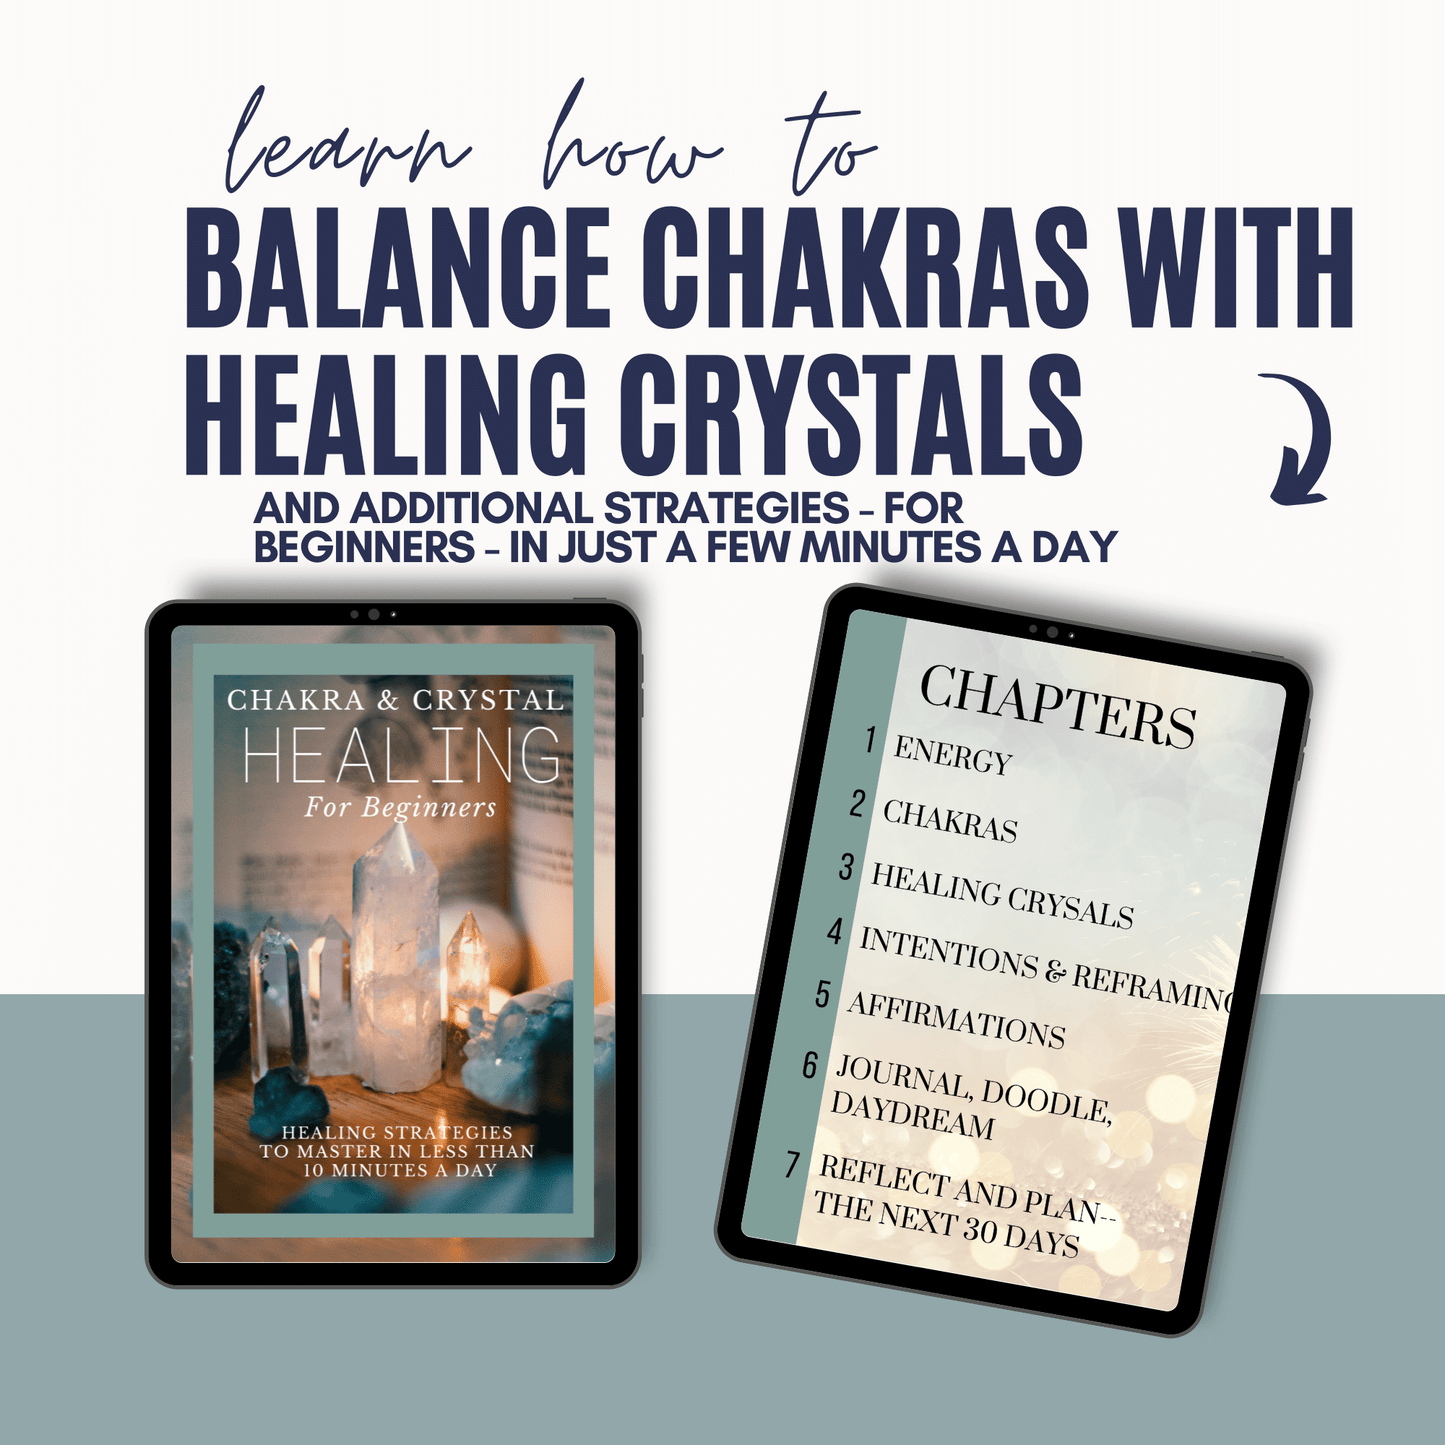 Chakra & Crystal Healing eBook